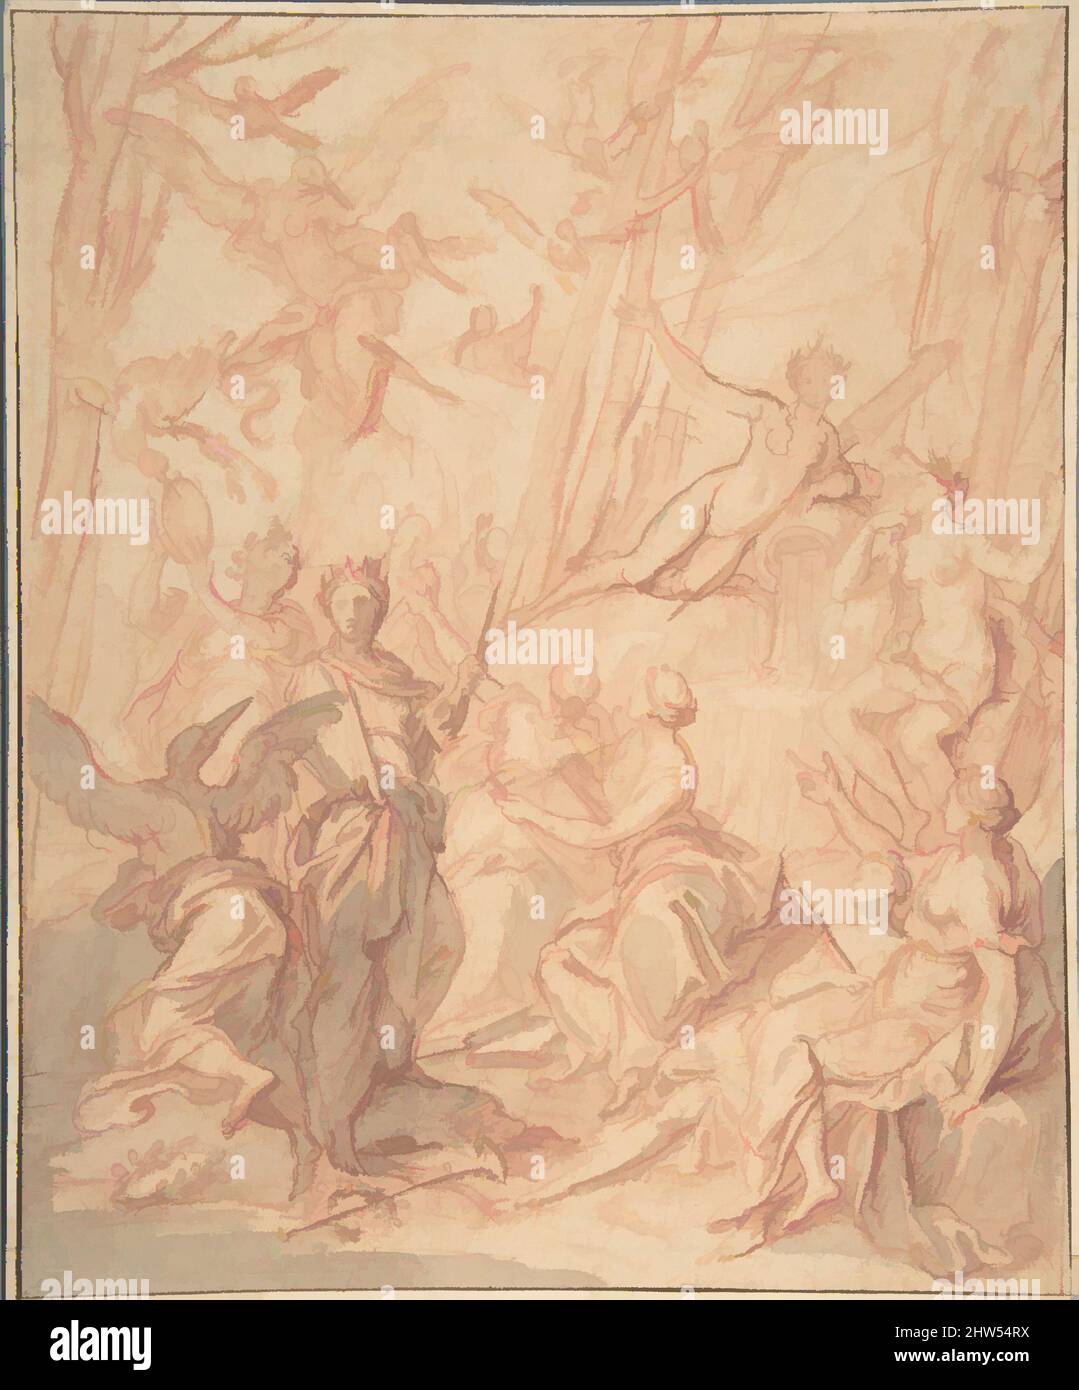 Kunst inspiriert von den neun Pieriden, die nach ihrem erfolglosen Wettbewerb mit den Musen in Elstern verwandelt wurden (Ovid, Metamorphosen, V, 294 ff.), n.d., Rote Kreide, rote und graue Wäsche, Rahmen mit Stift und brauner Tinte, 10 11/16 x 8 3/4 Zoll (27,1 x 22,2 cm), Zeichnungen, Antoine Dieu (, Klassische Werke, die von Artotop mit einem Schuss Moderne modernisiert wurden. Formen, Farbe und Wert, auffällige visuelle Wirkung auf Kunst. Emotionen durch Freiheit von Kunstwerken auf zeitgemäße Weise. Eine zeitlose Botschaft, die eine wild kreative neue Richtung verfolgt. Künstler, die sich dem digitalen Medium zuwenden und die Artotop NFT erschaffen Stockfoto